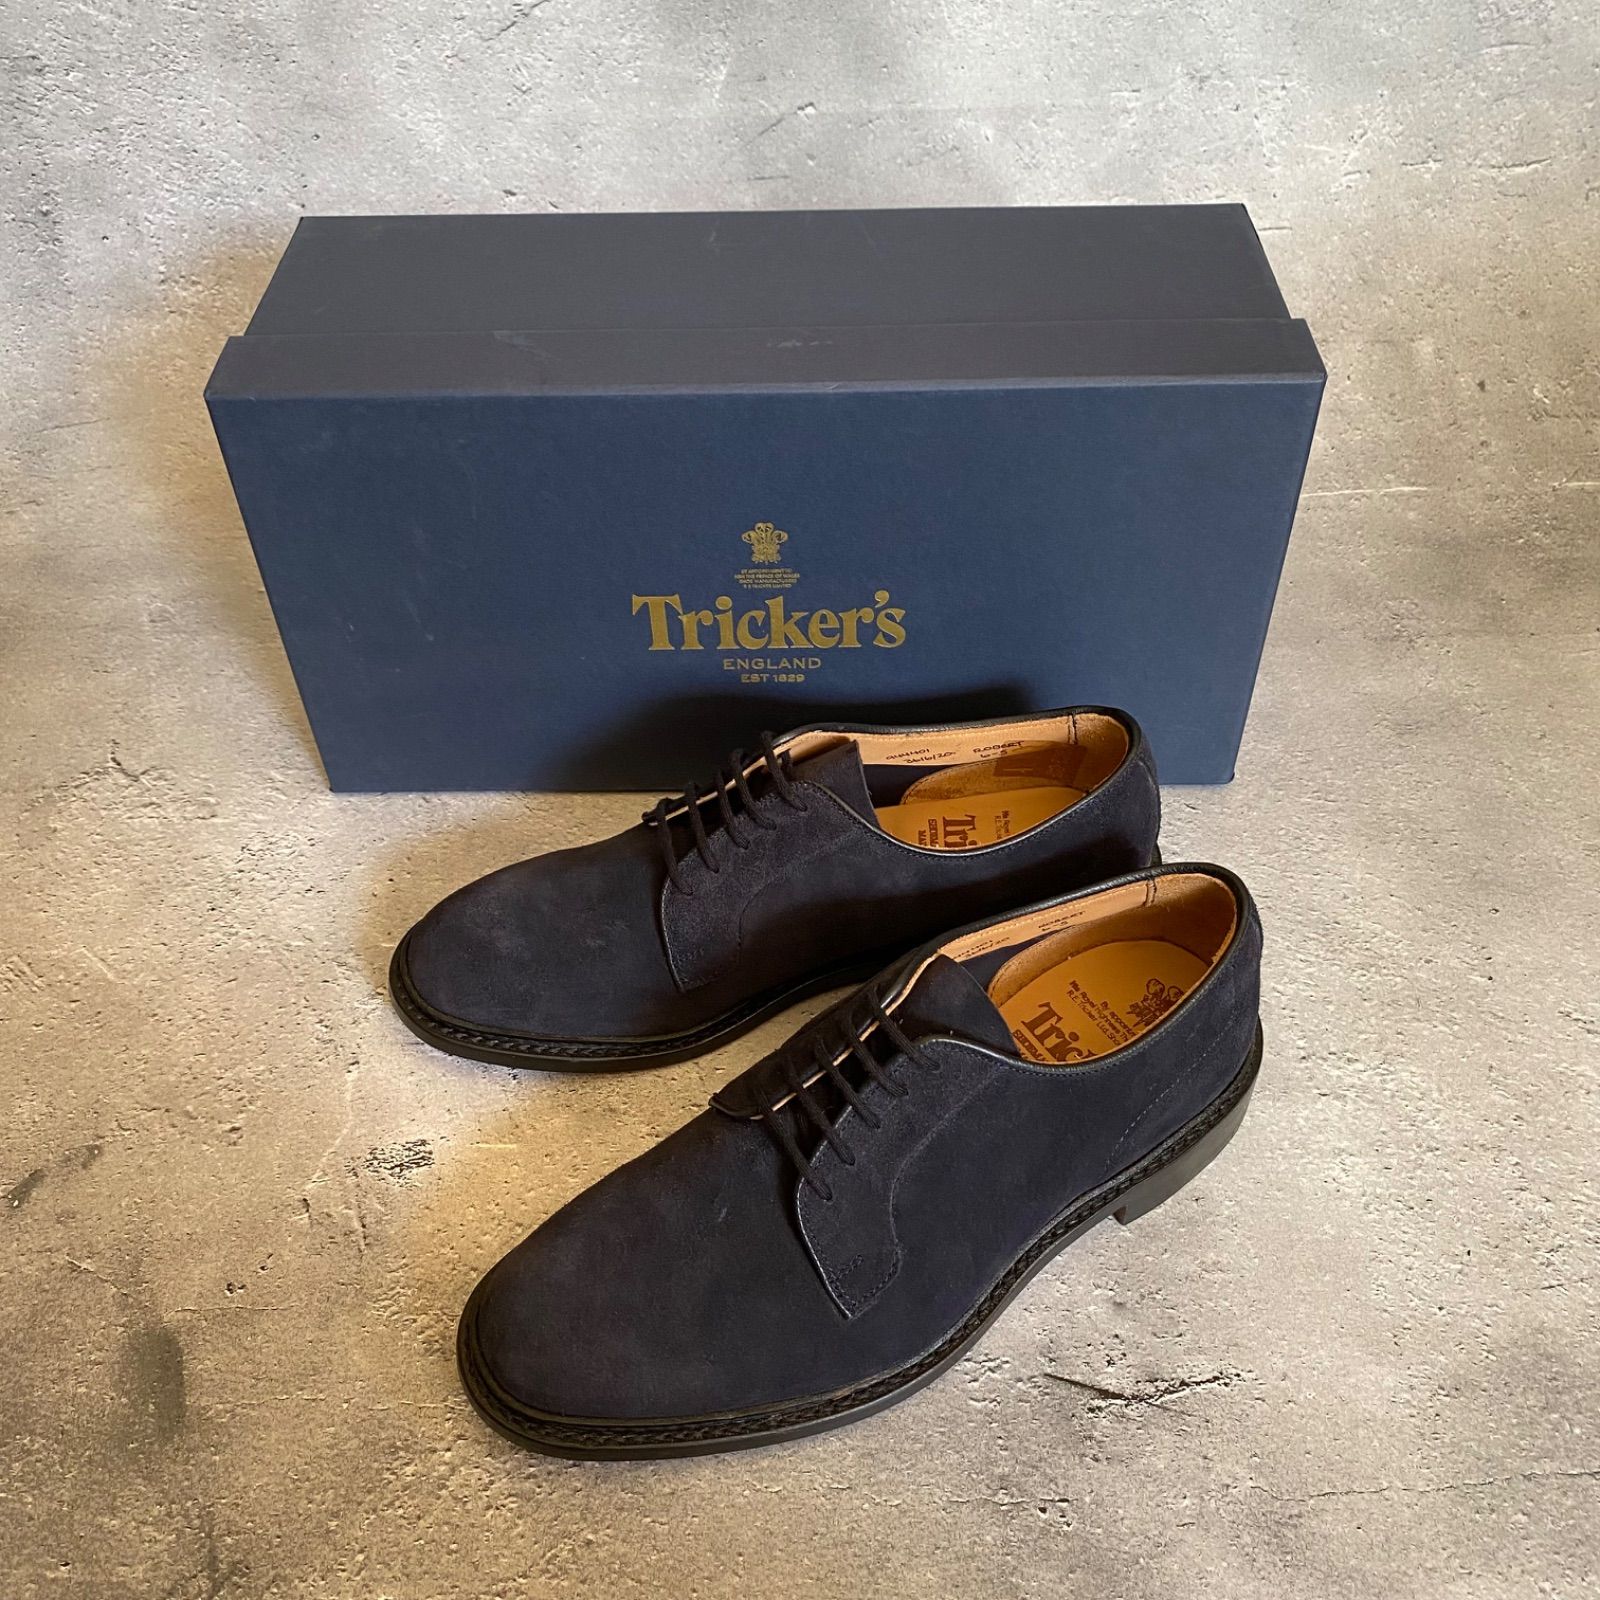 【在庫限】新品 トリッカーズ ロバート スエード プレーン ダービーシューズ イングランド 靴